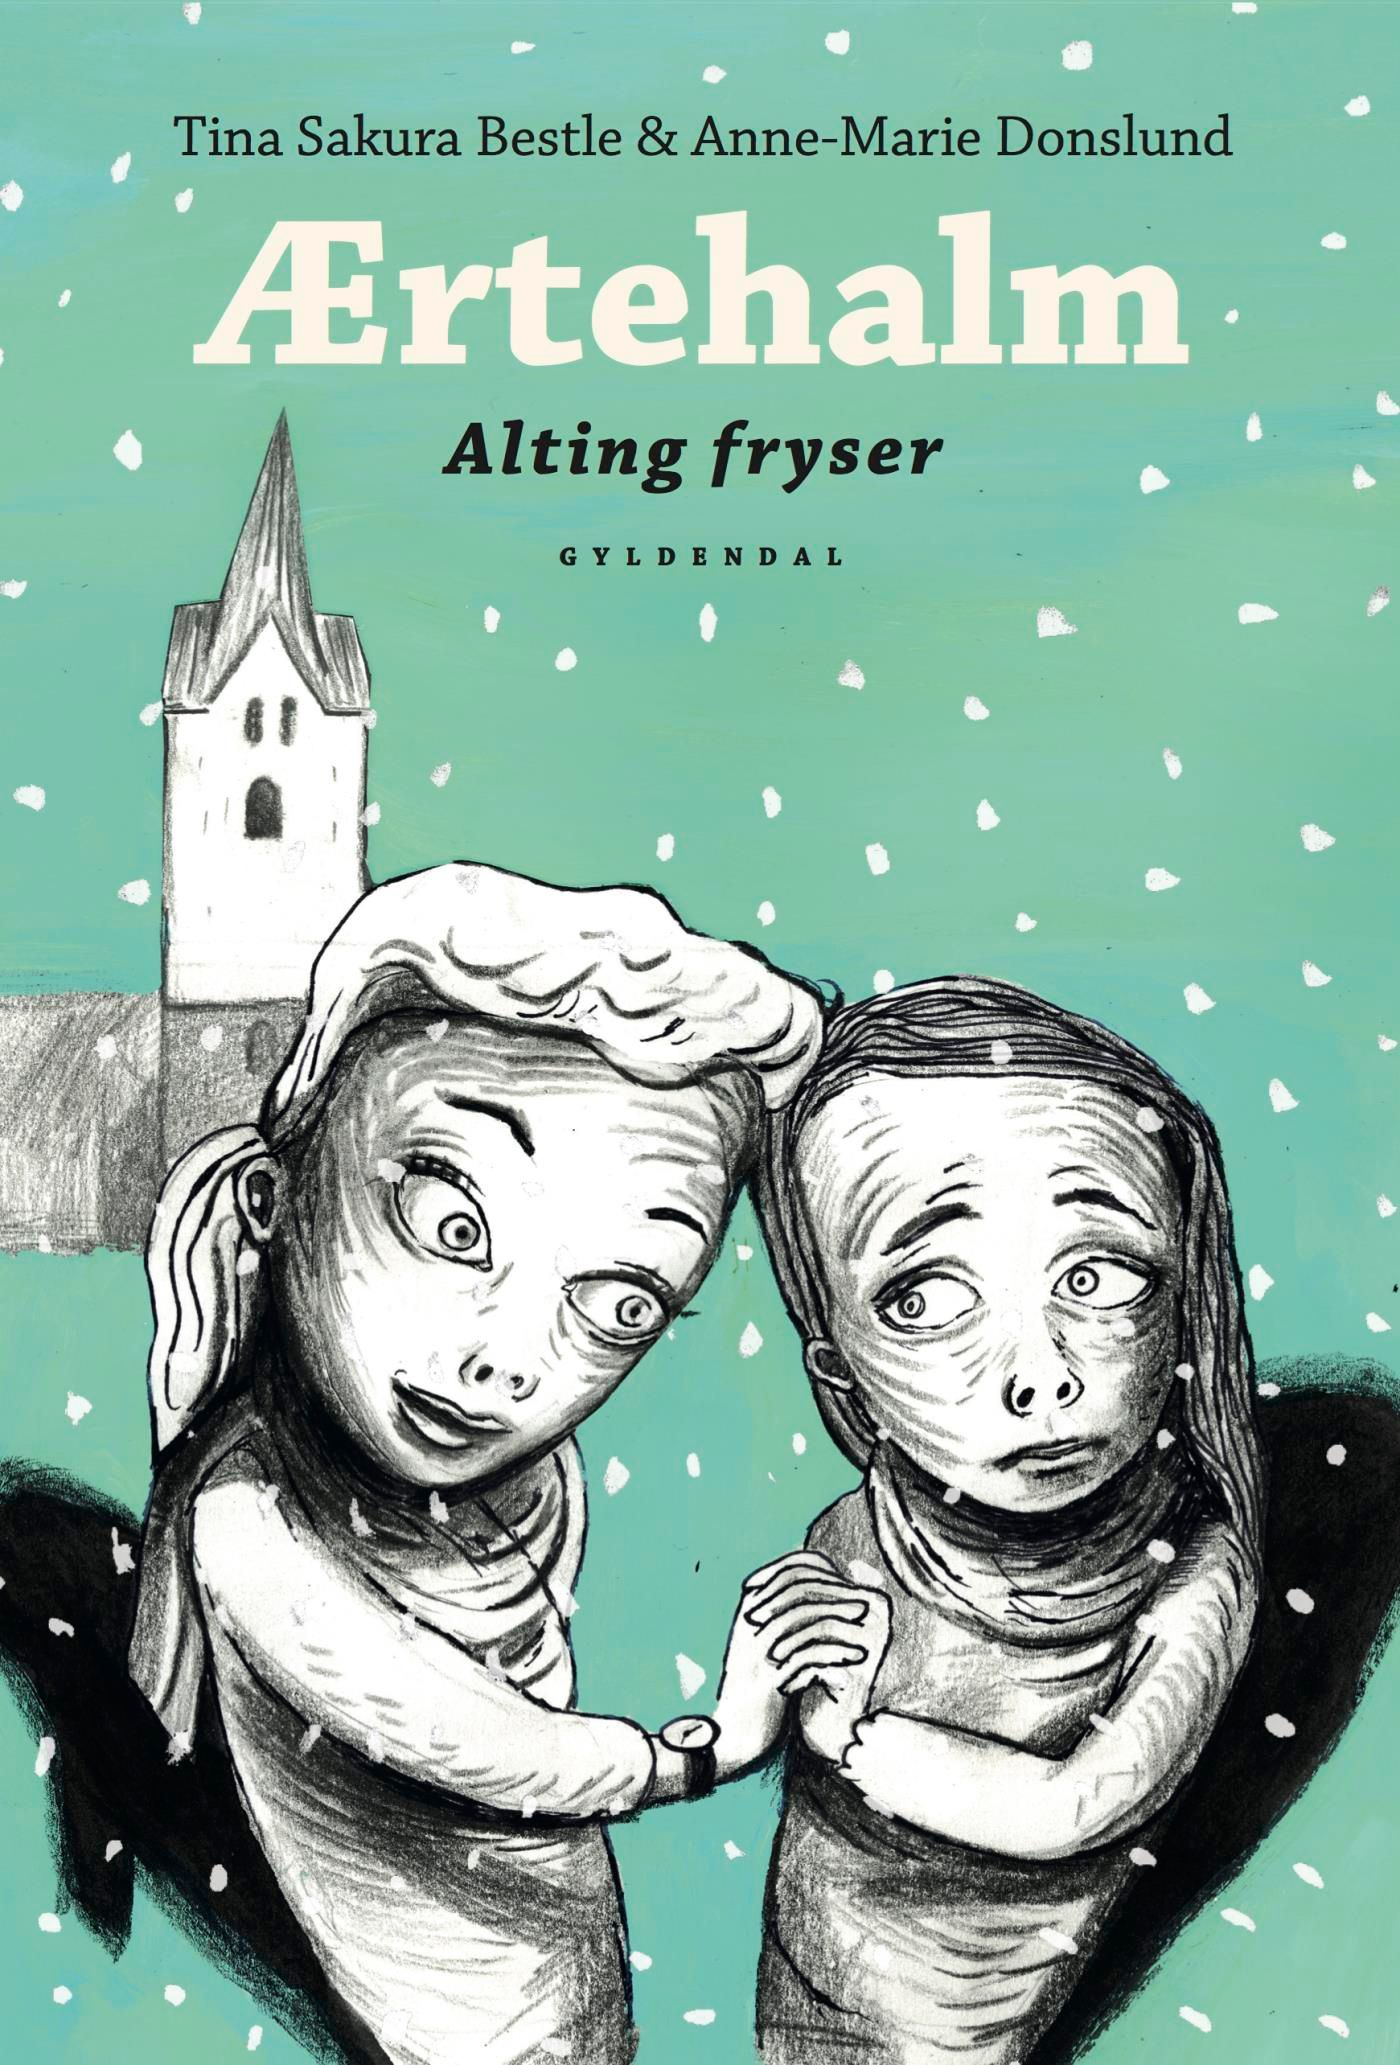 Ærtehalm 3 - Alting fryser, e-bok av Anne-Marie Donslund, Tina Sakura Bestle